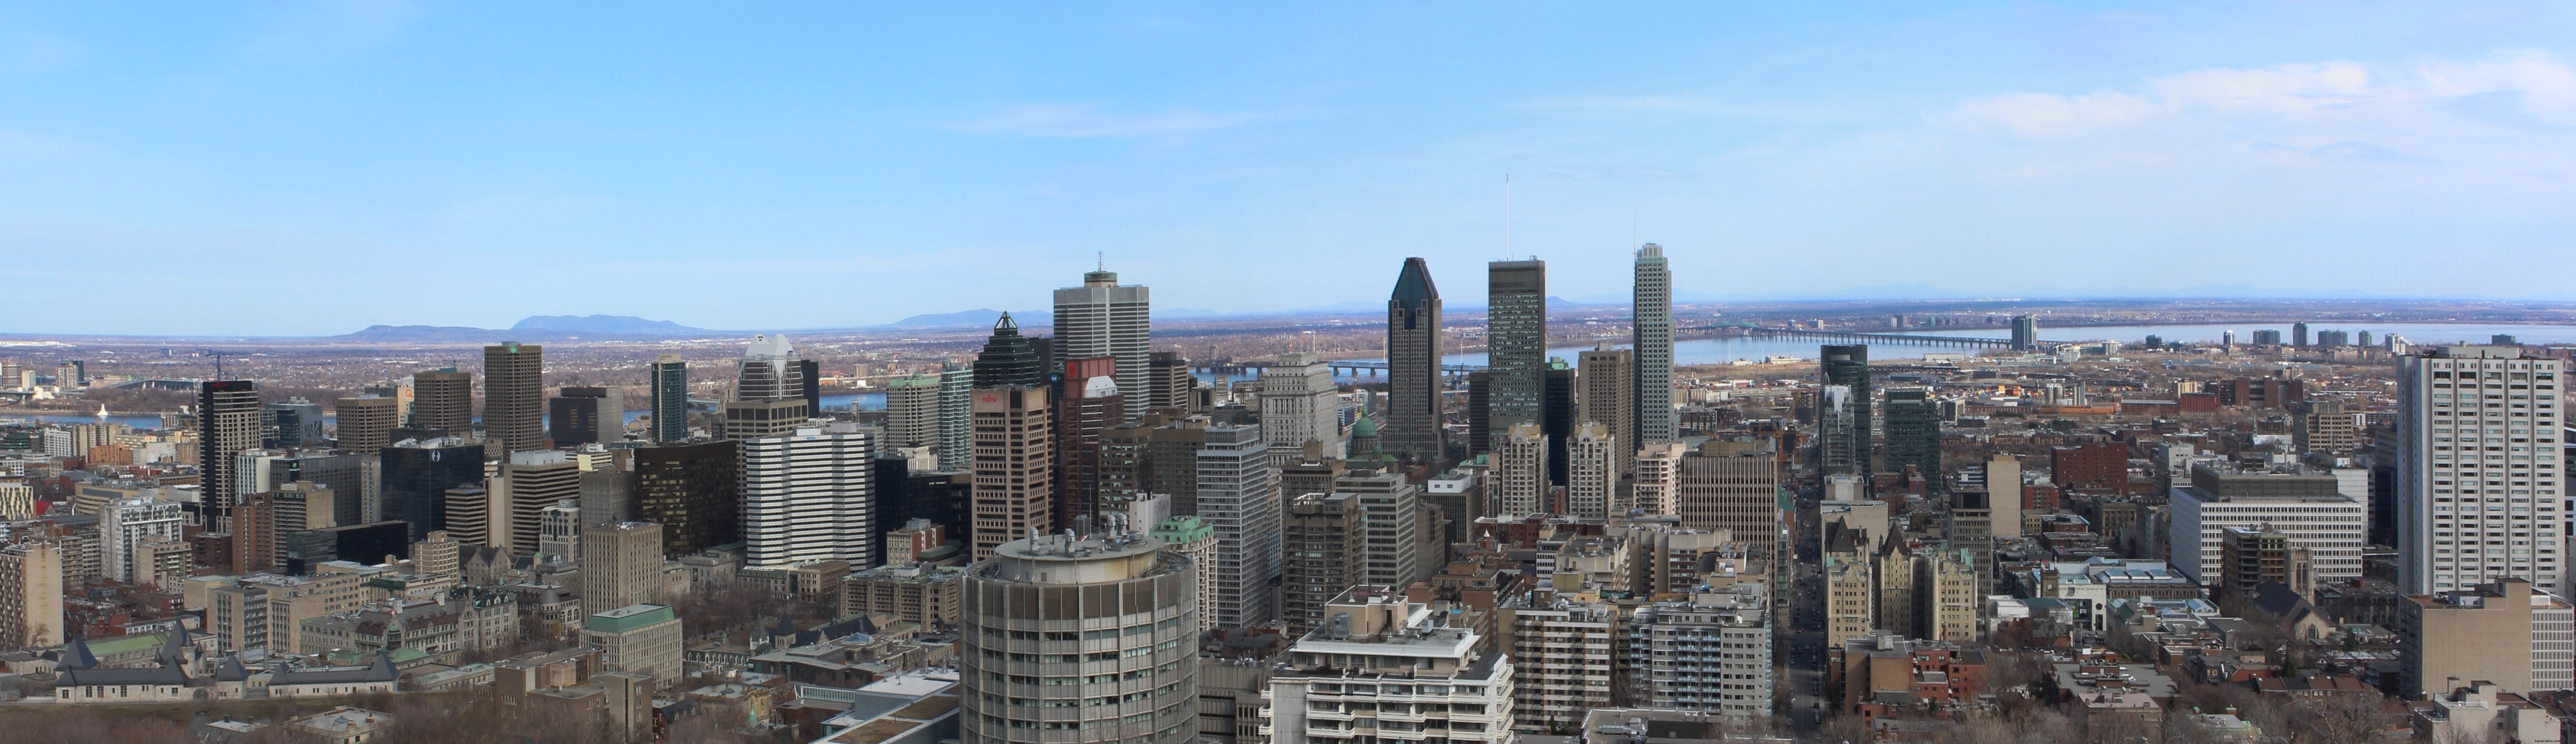 Foto do horizonte de Montreal Quebec